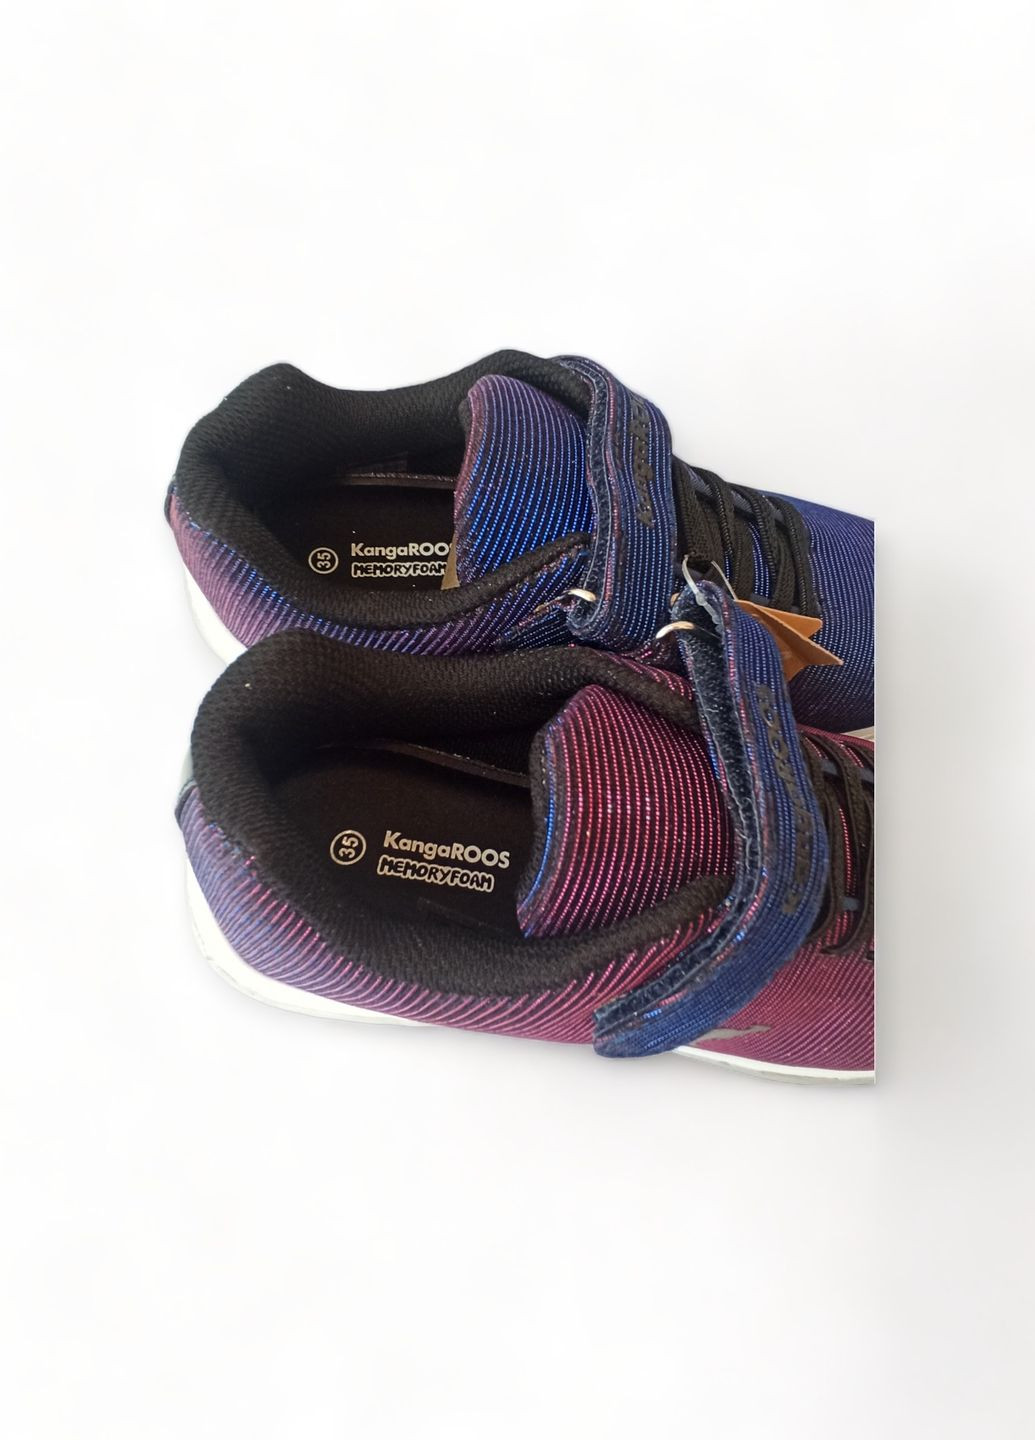 Фиолетовые всесезонные кроссовки детские для девочки 18315/4071 фиолет хамелеон стелька memory foam (33) Kangaroos